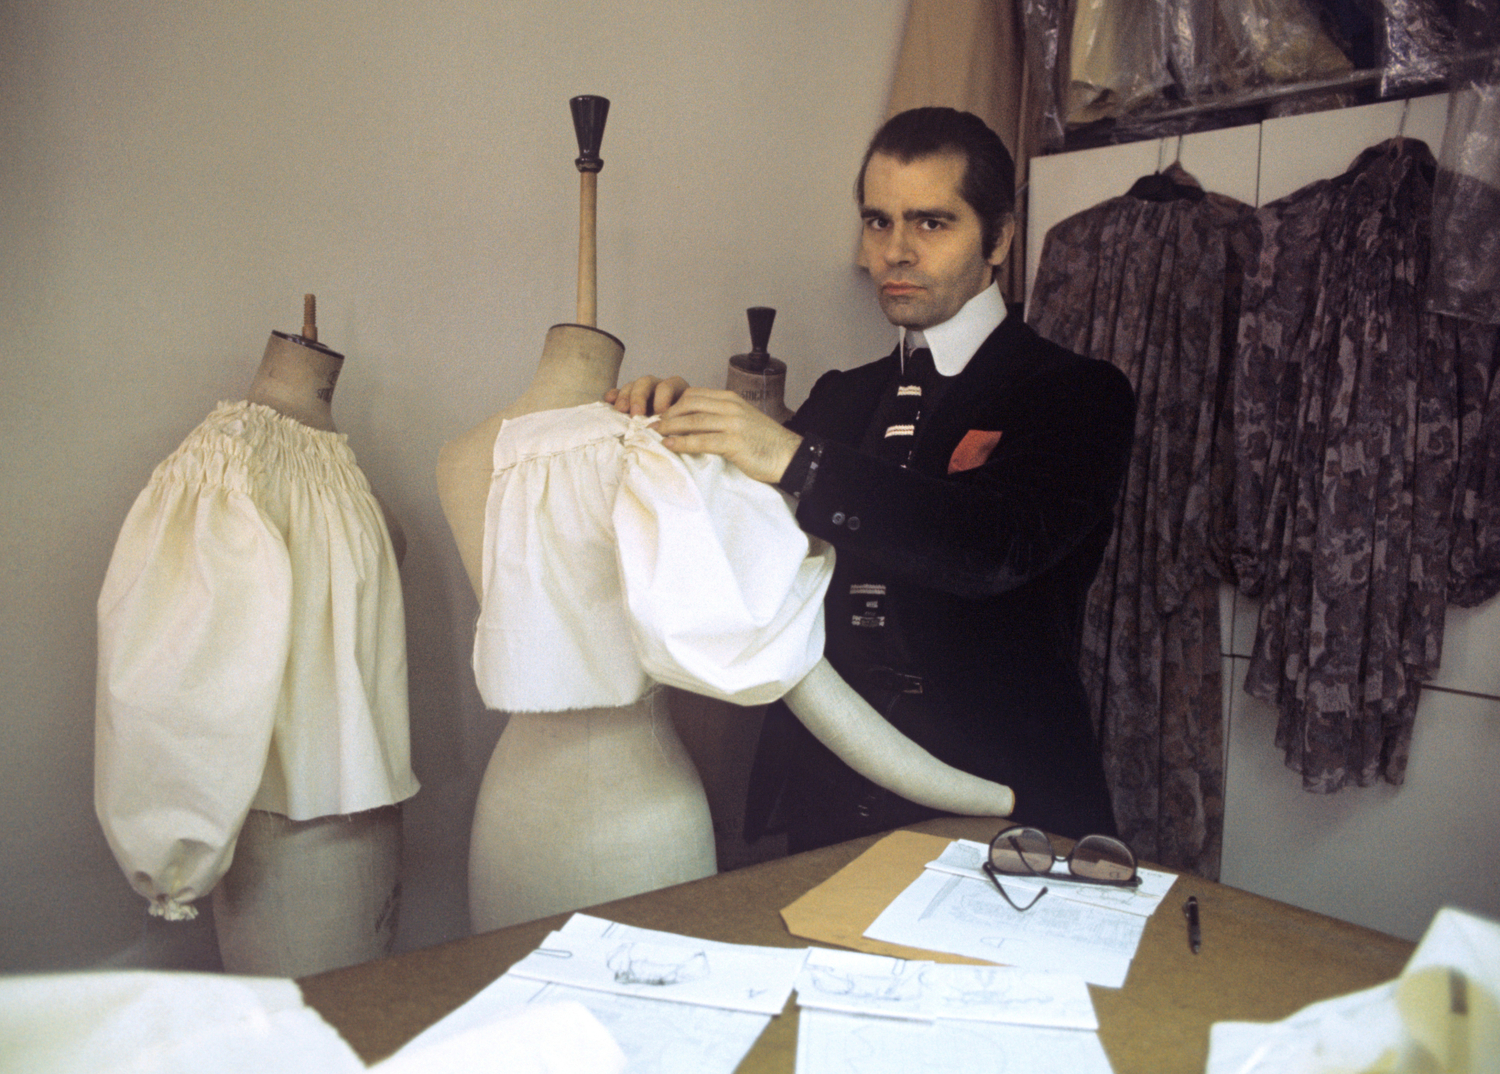 V módním průmyslu se jeho jméno stalo známým počátkem 80. let, kdy založil vlastní značku parfémů a oblečení. Přelomem byl pro Lagerfelda rok 1982, kdy začal pracovat jako hlavní návrhář pro firmu Chanel, na této pozici setrval až do své smrti. (FOTO: DPA/Roland Witschel)